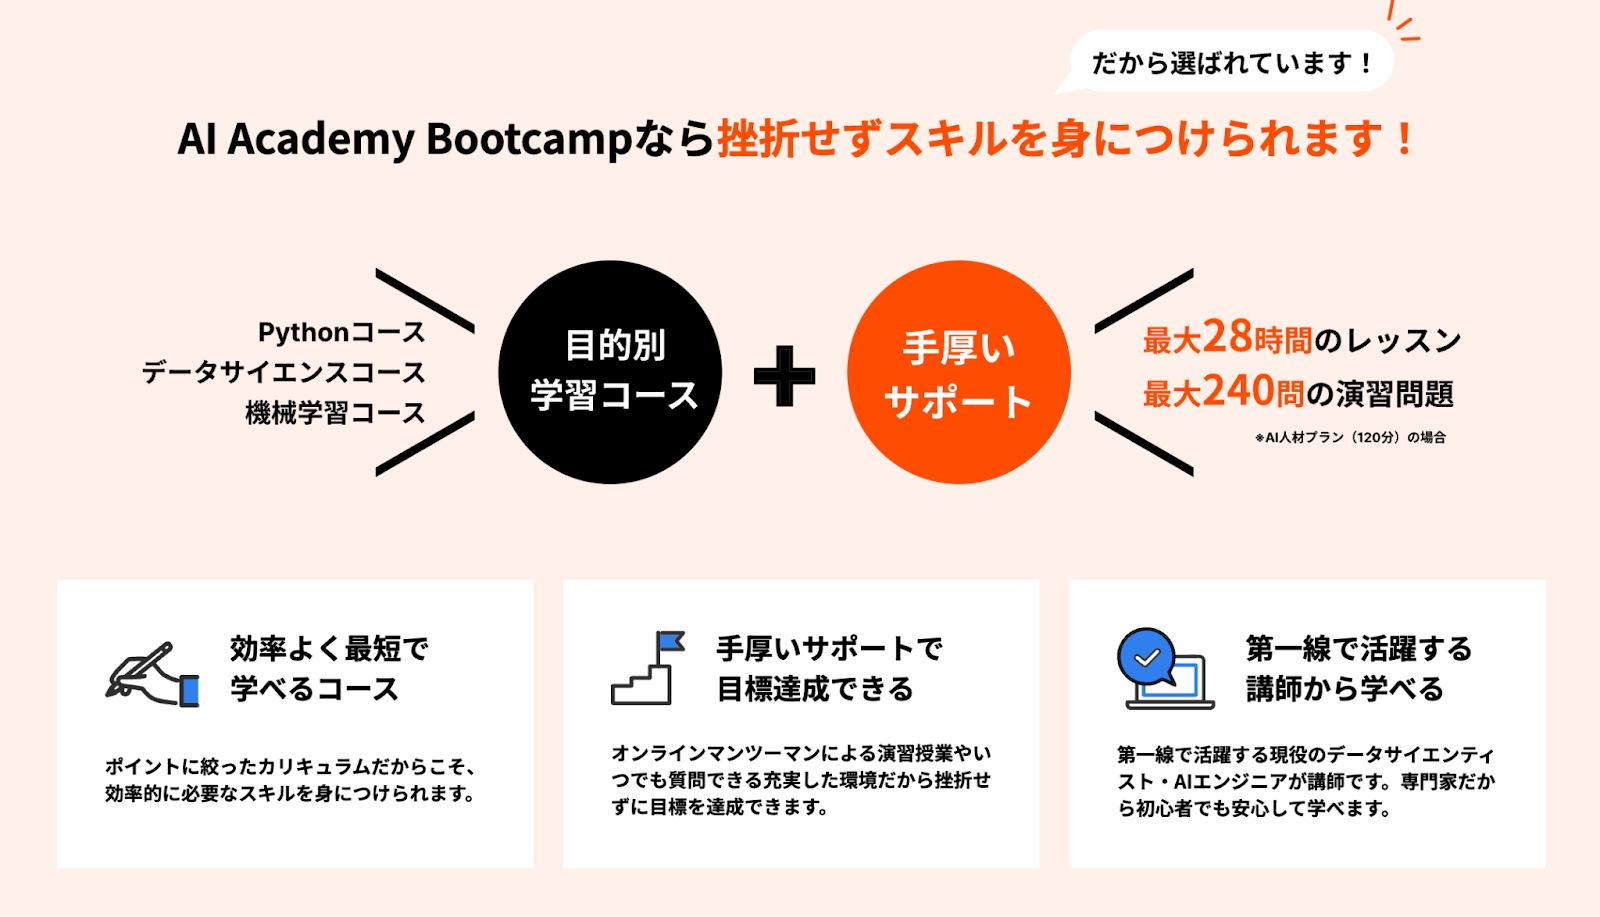 AI Academy Bootcamp